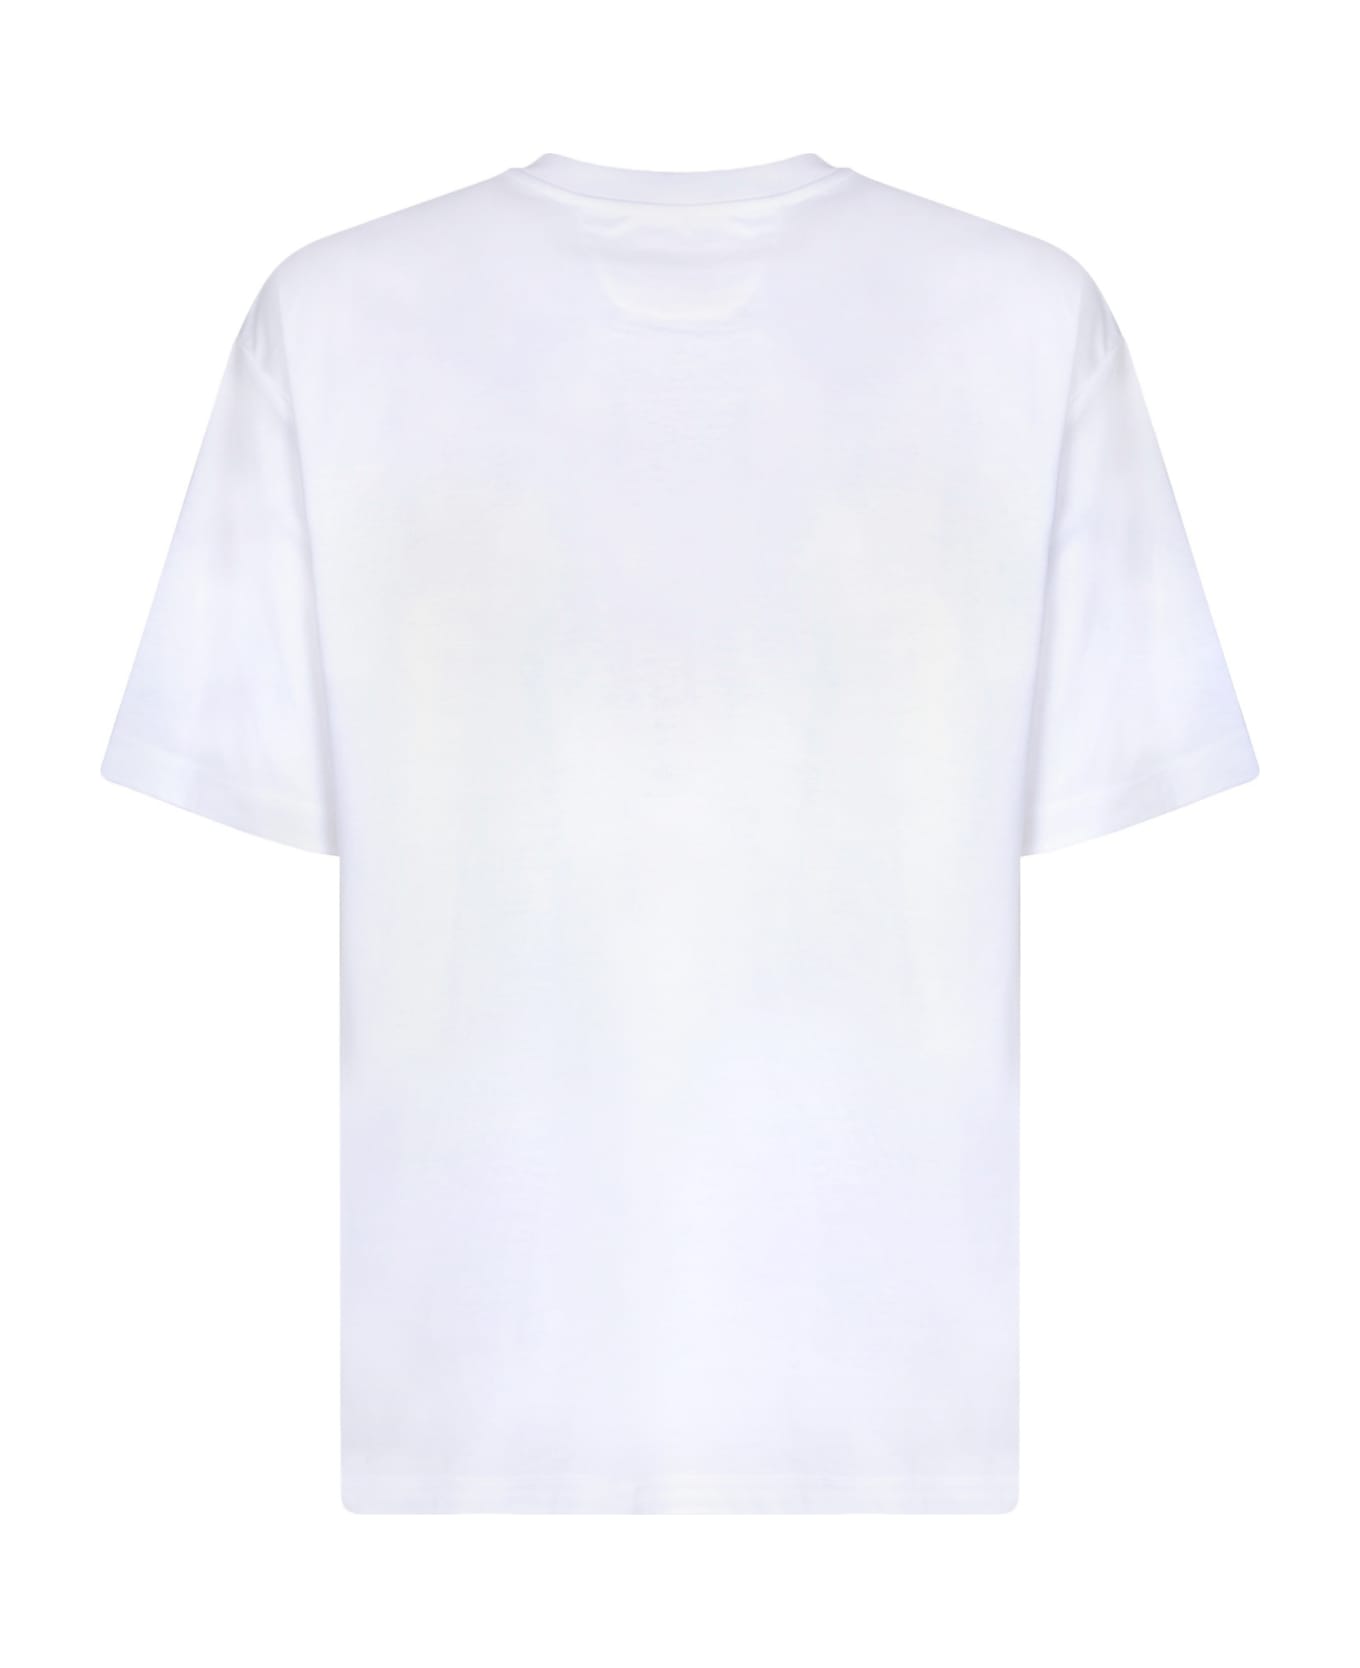 Ferrari Graffiti Logo White T-shirt - White シャツ